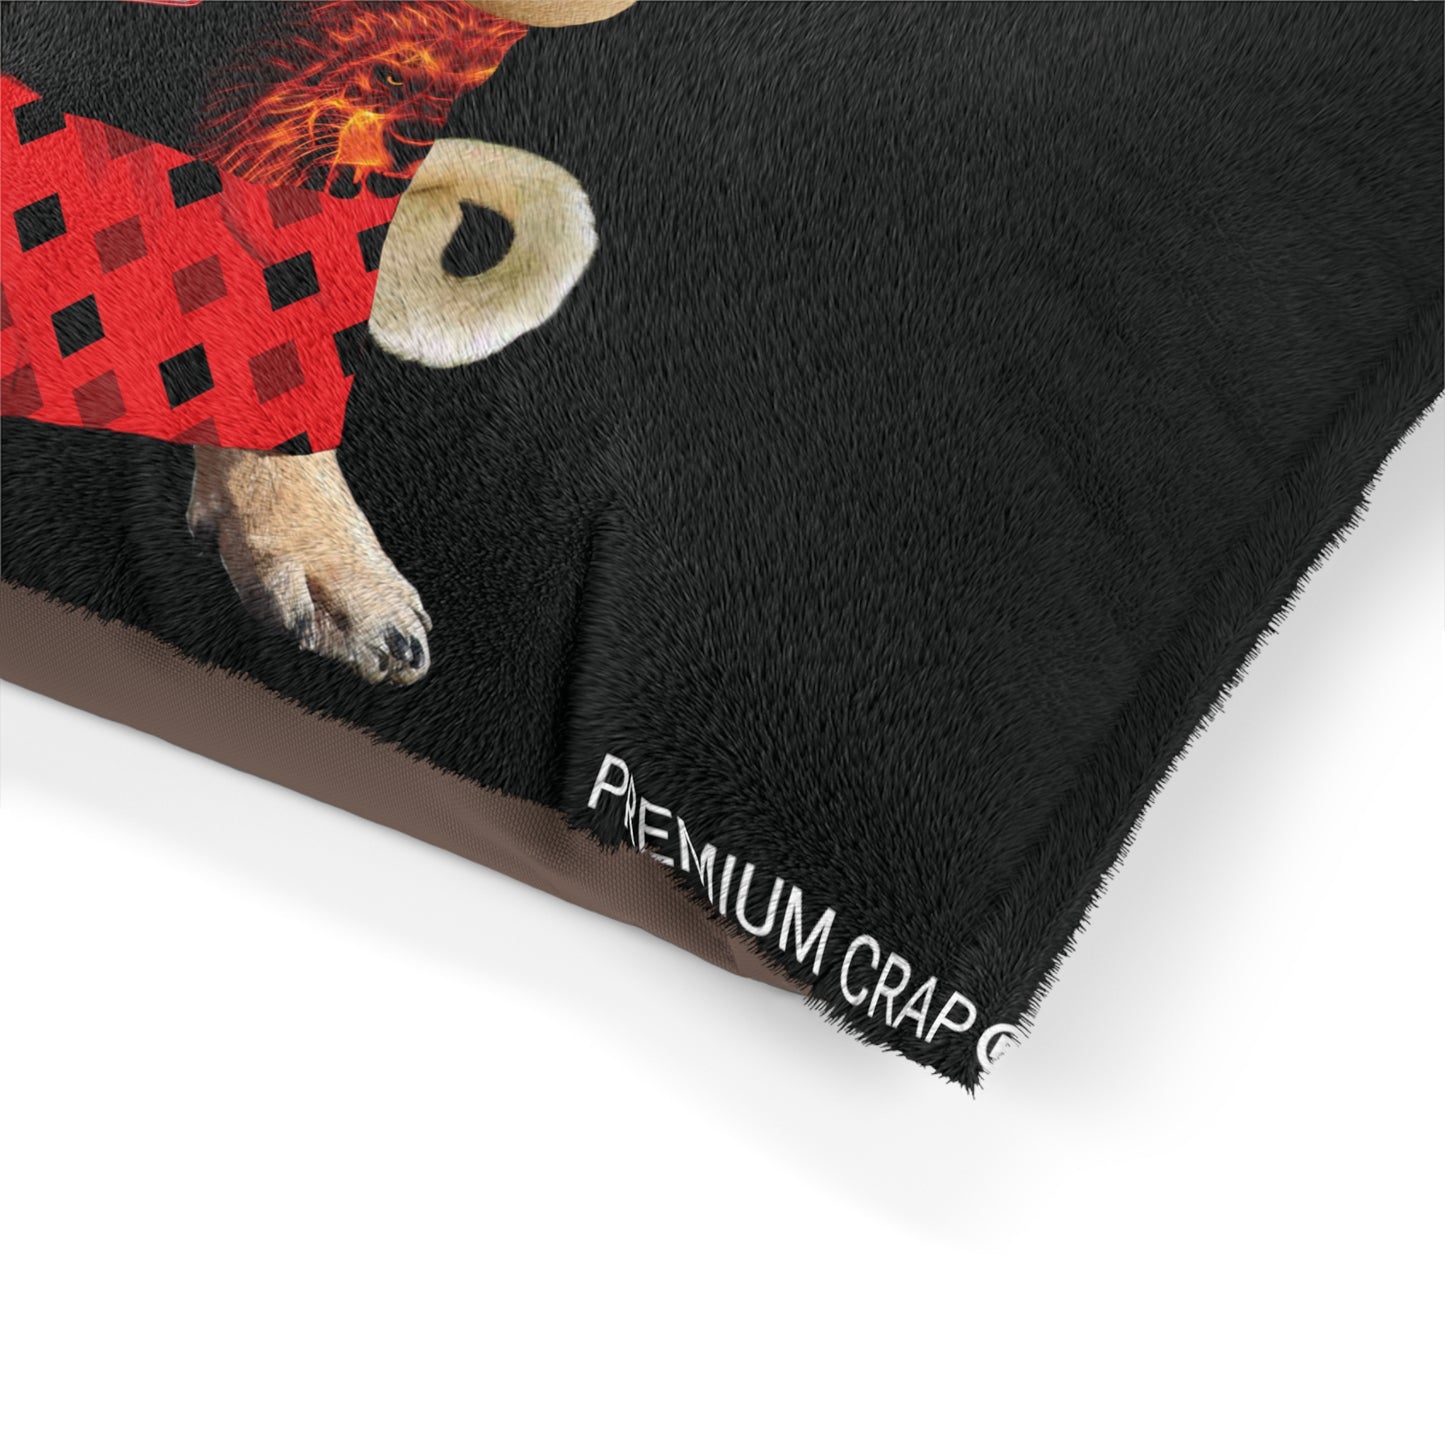 Premium Crap II Pet Bed